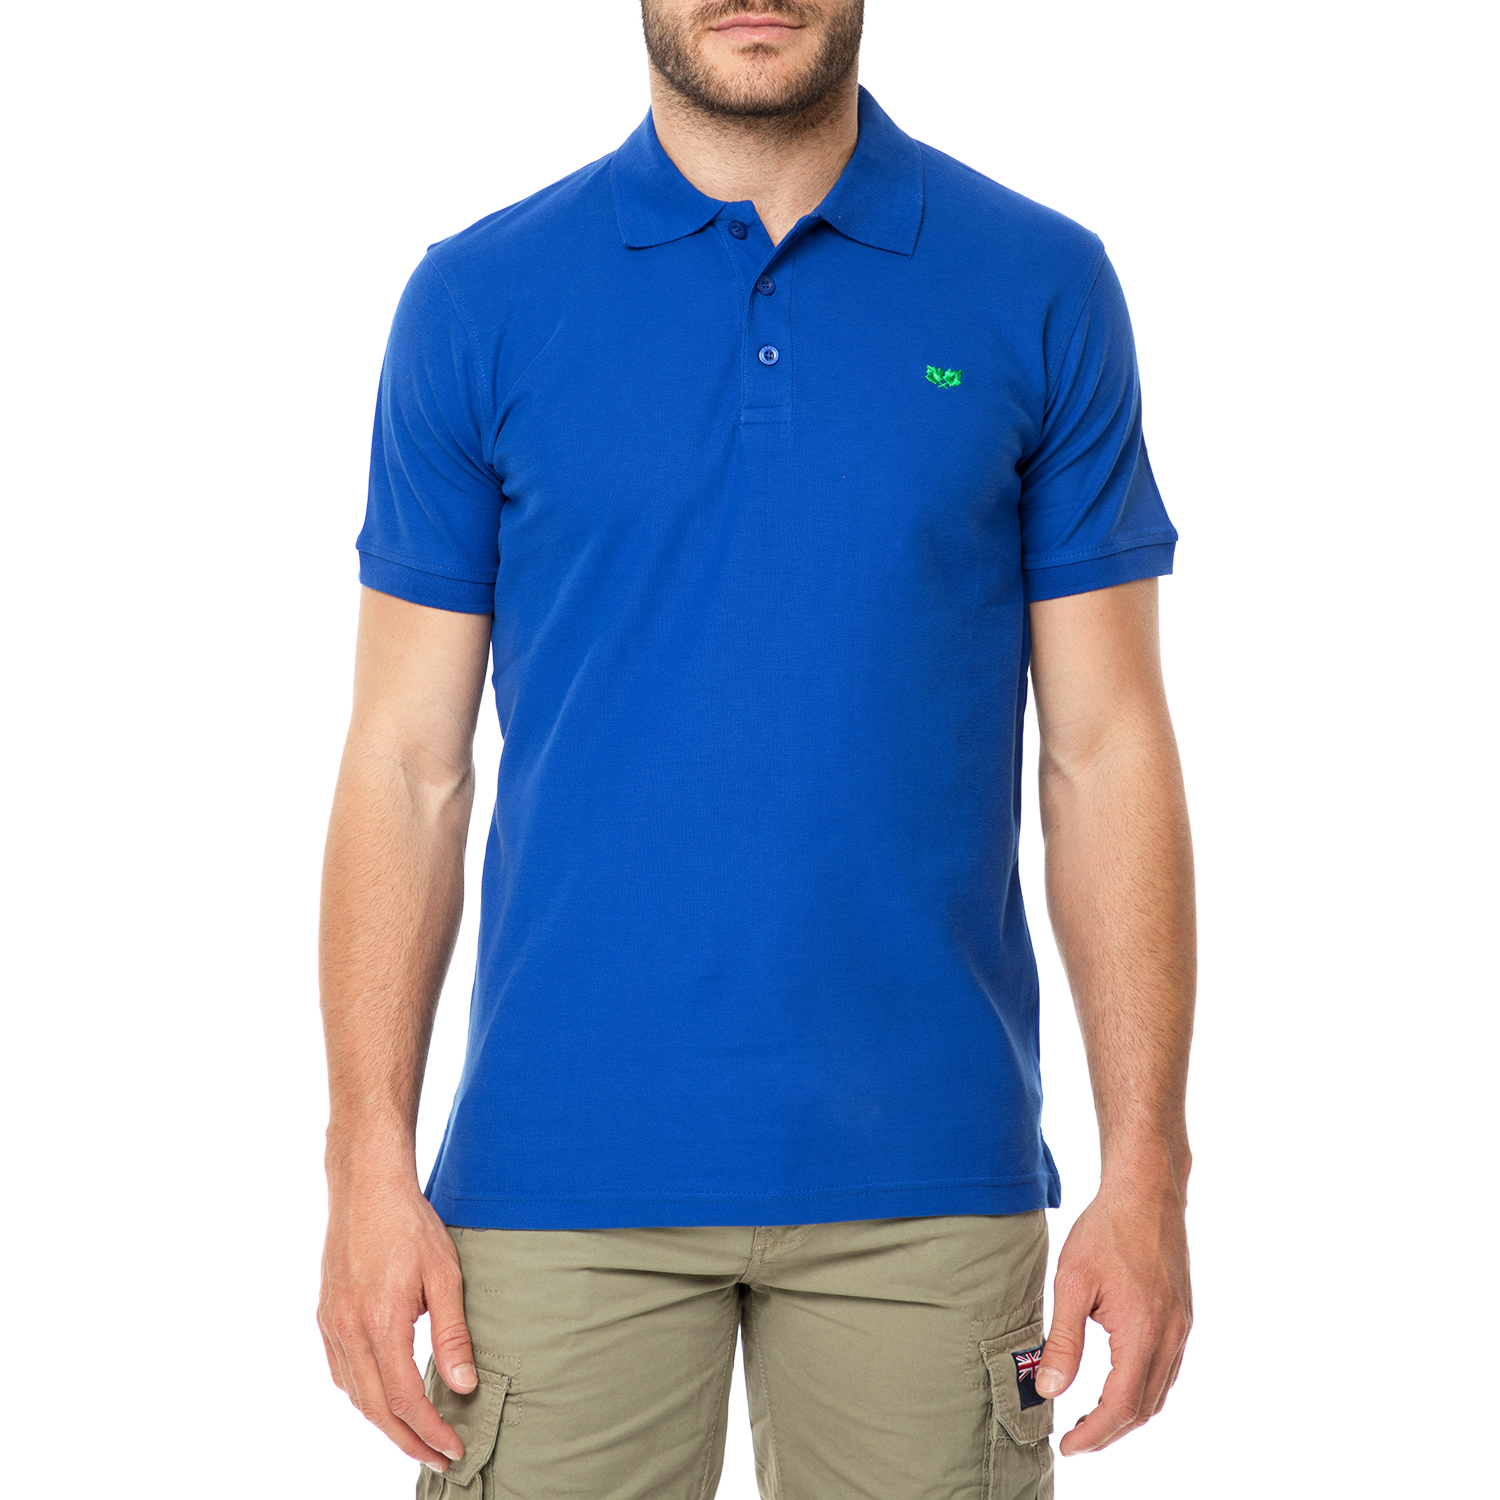 Ανδρικά/Ρούχα/Μπλούζες/Πόλο GREENWOOD - Ανδρική πόλο μπλούζα GREENWOOD μπλε ρουά